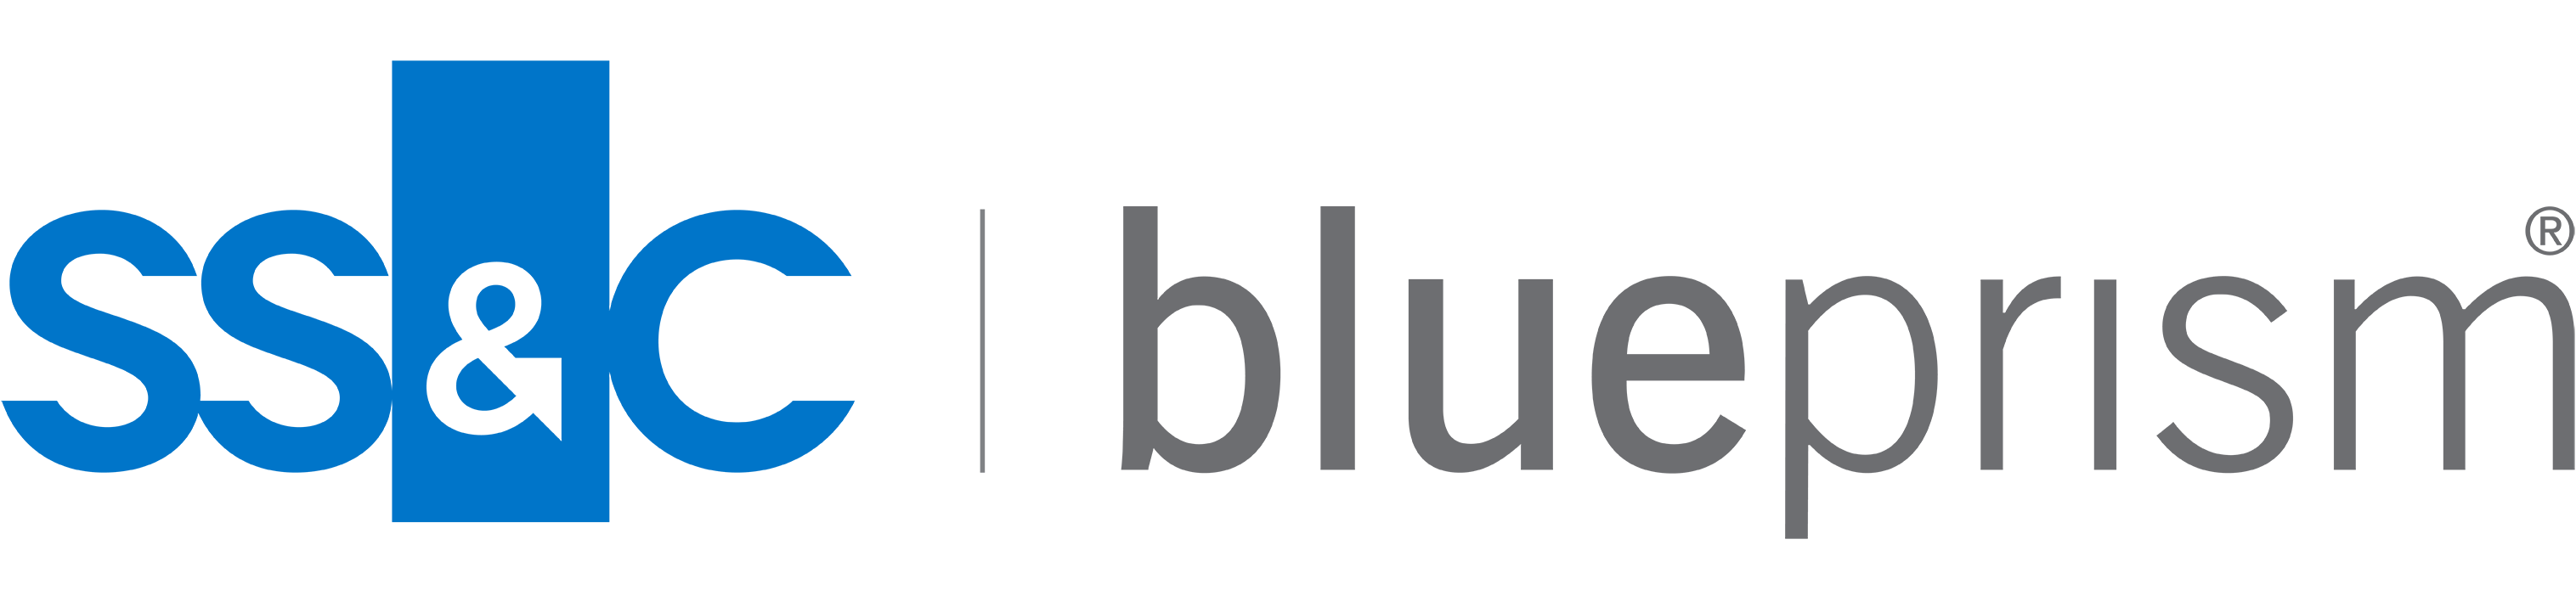 Blue blue prism logo